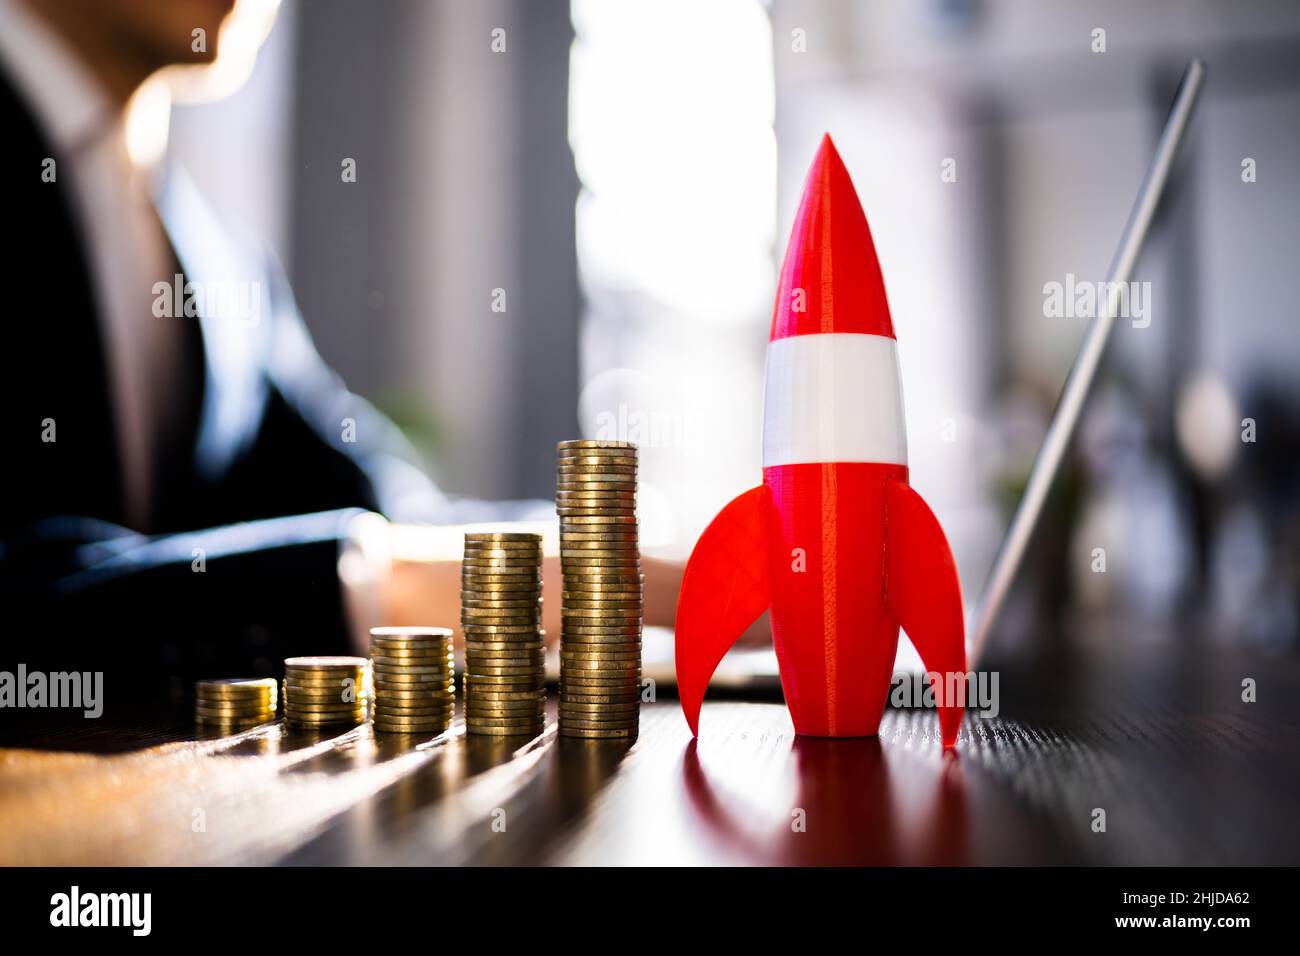 Red Rocket, además de Monedas apiladas y flecha que muestra la dirección hacia arriba Foto de stock